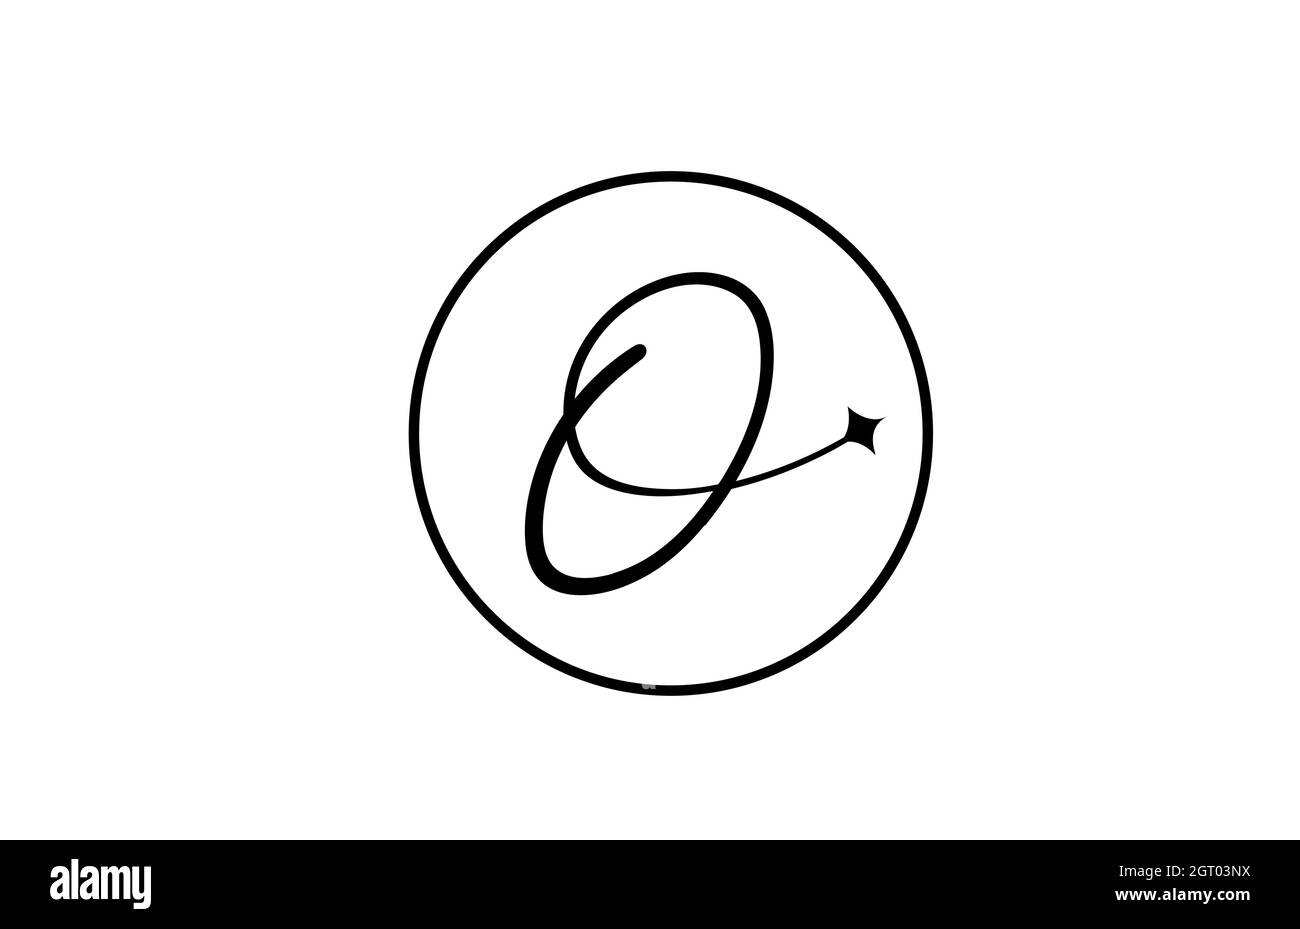 O logo lettera alfabetica per le aziende con stella e cerchio. Lettere semplici ed eleganti per l'azienda. Logo di identità aziendale icona di branding in bianco e nero Illustrazione Vettoriale